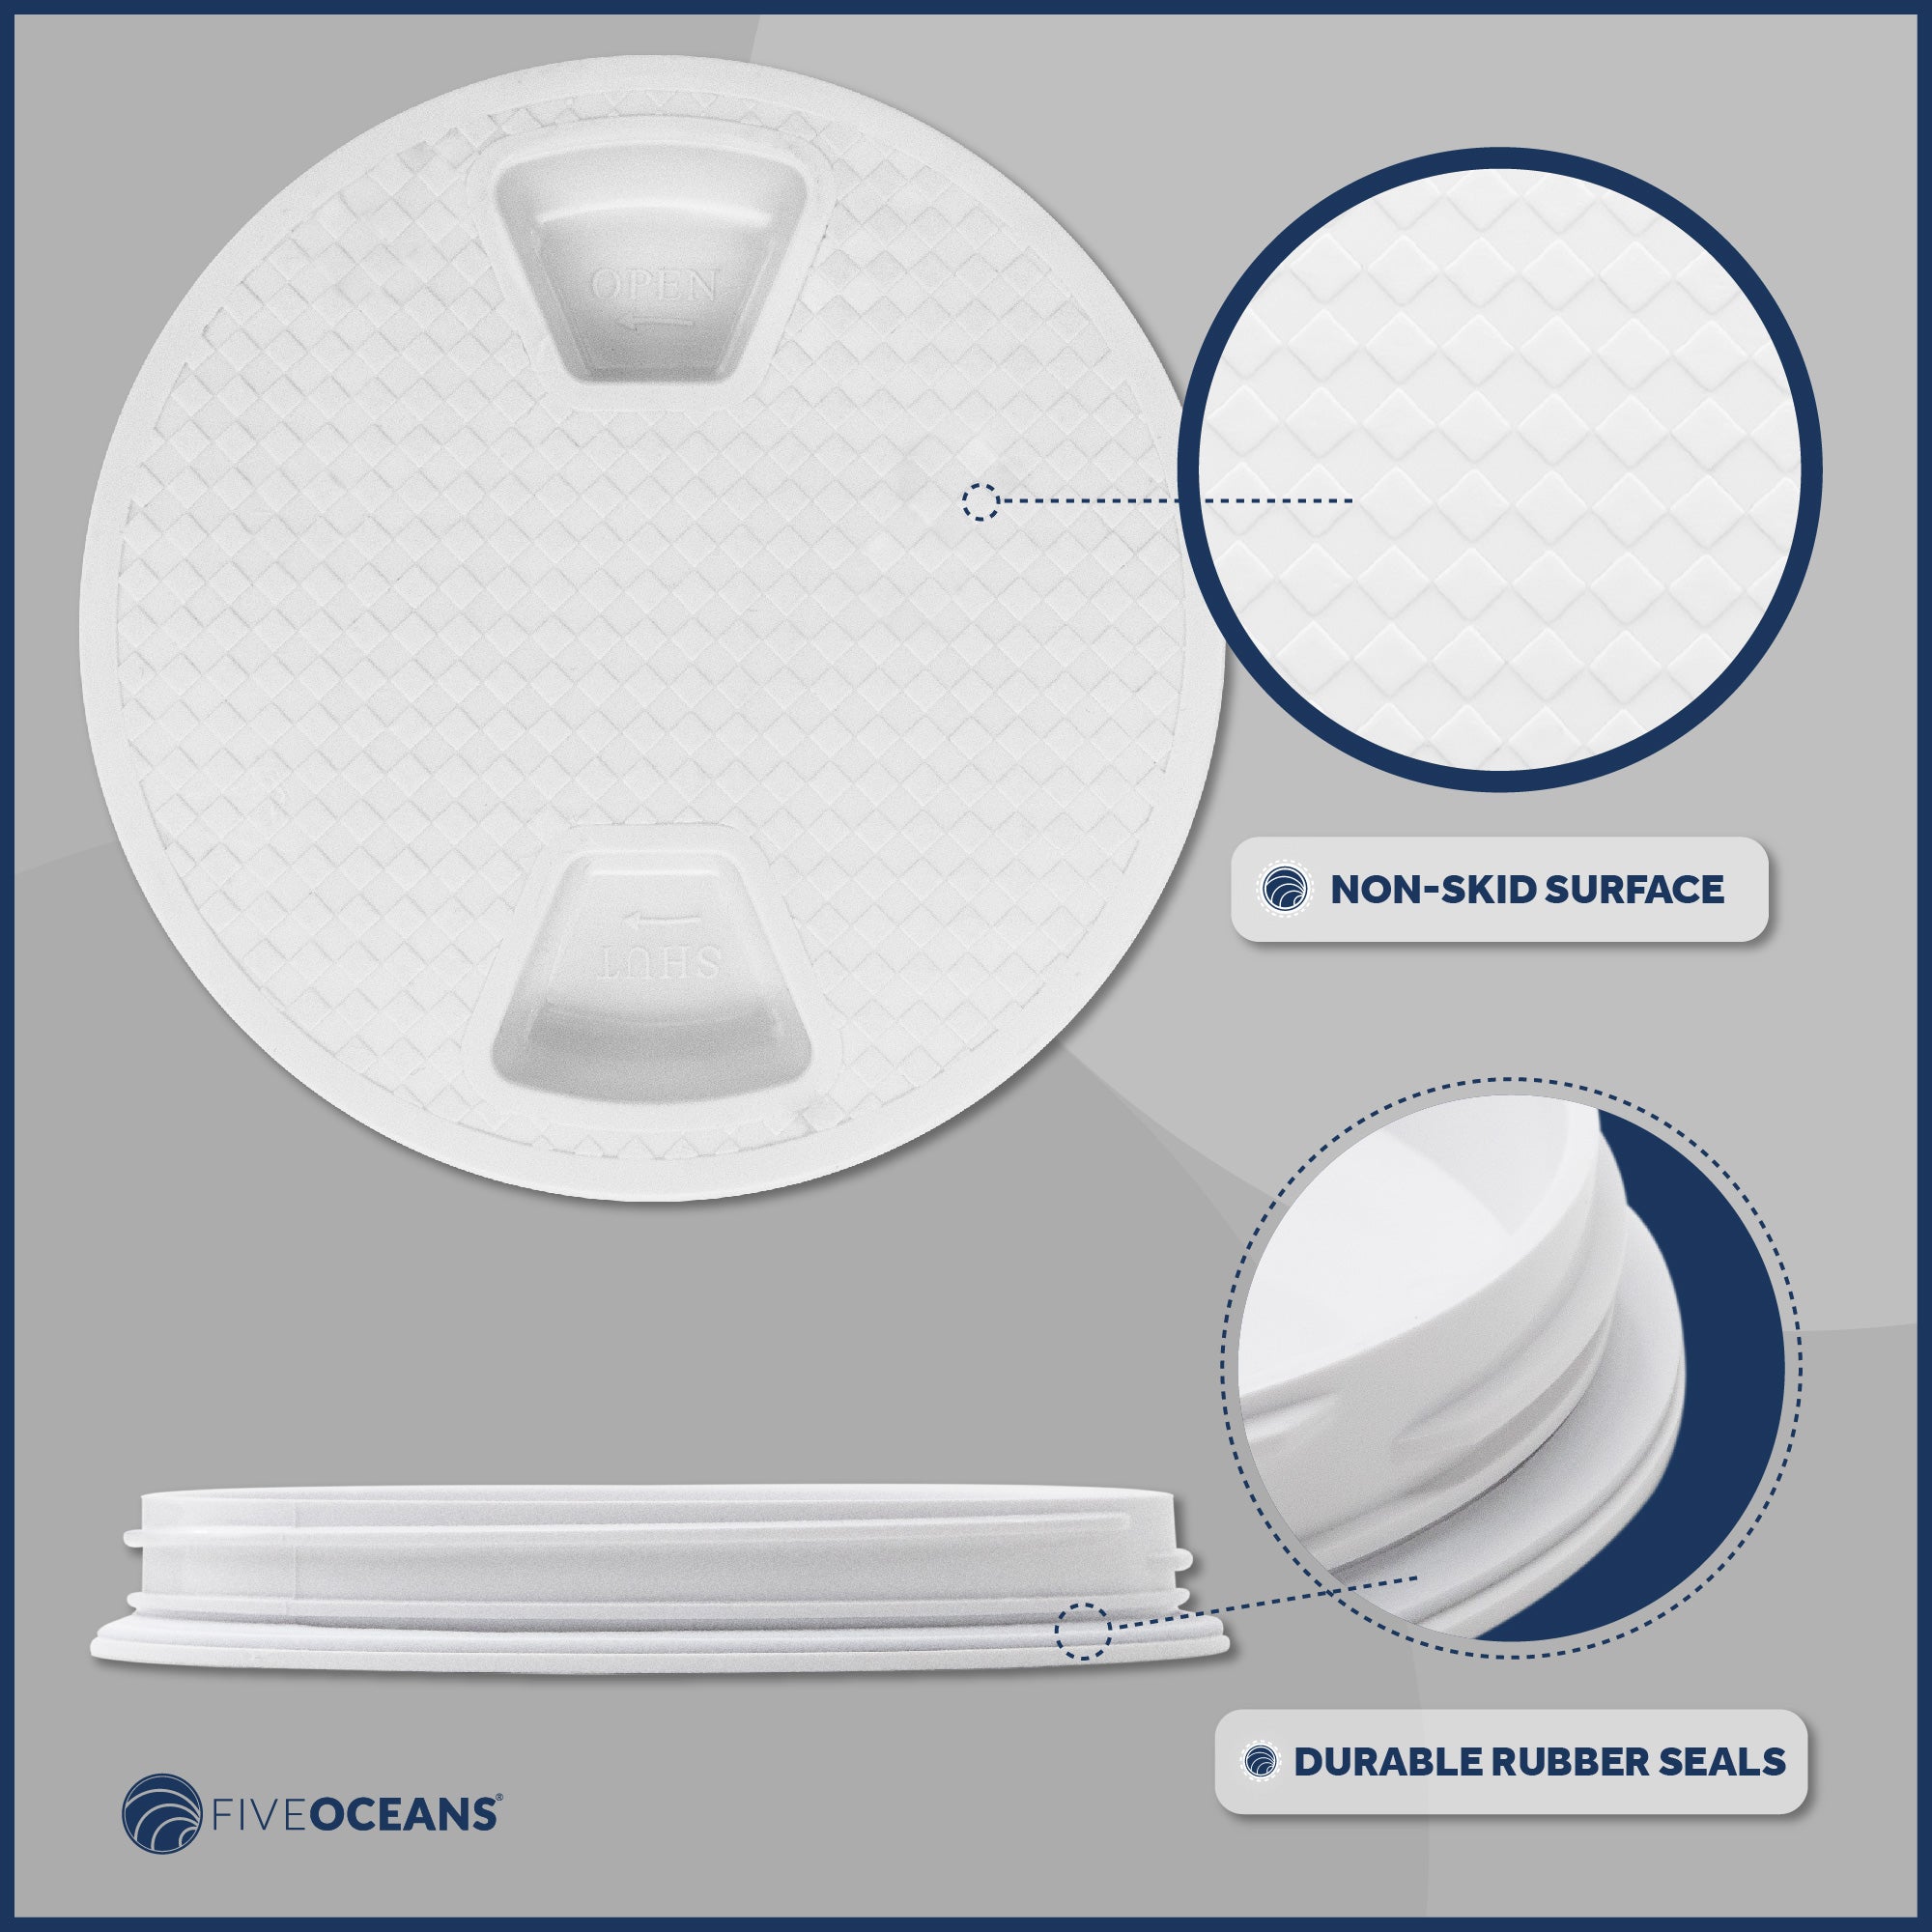 8" Deck Plate, Round Screw-in, Non-slip, White - Premium Series - FO4232